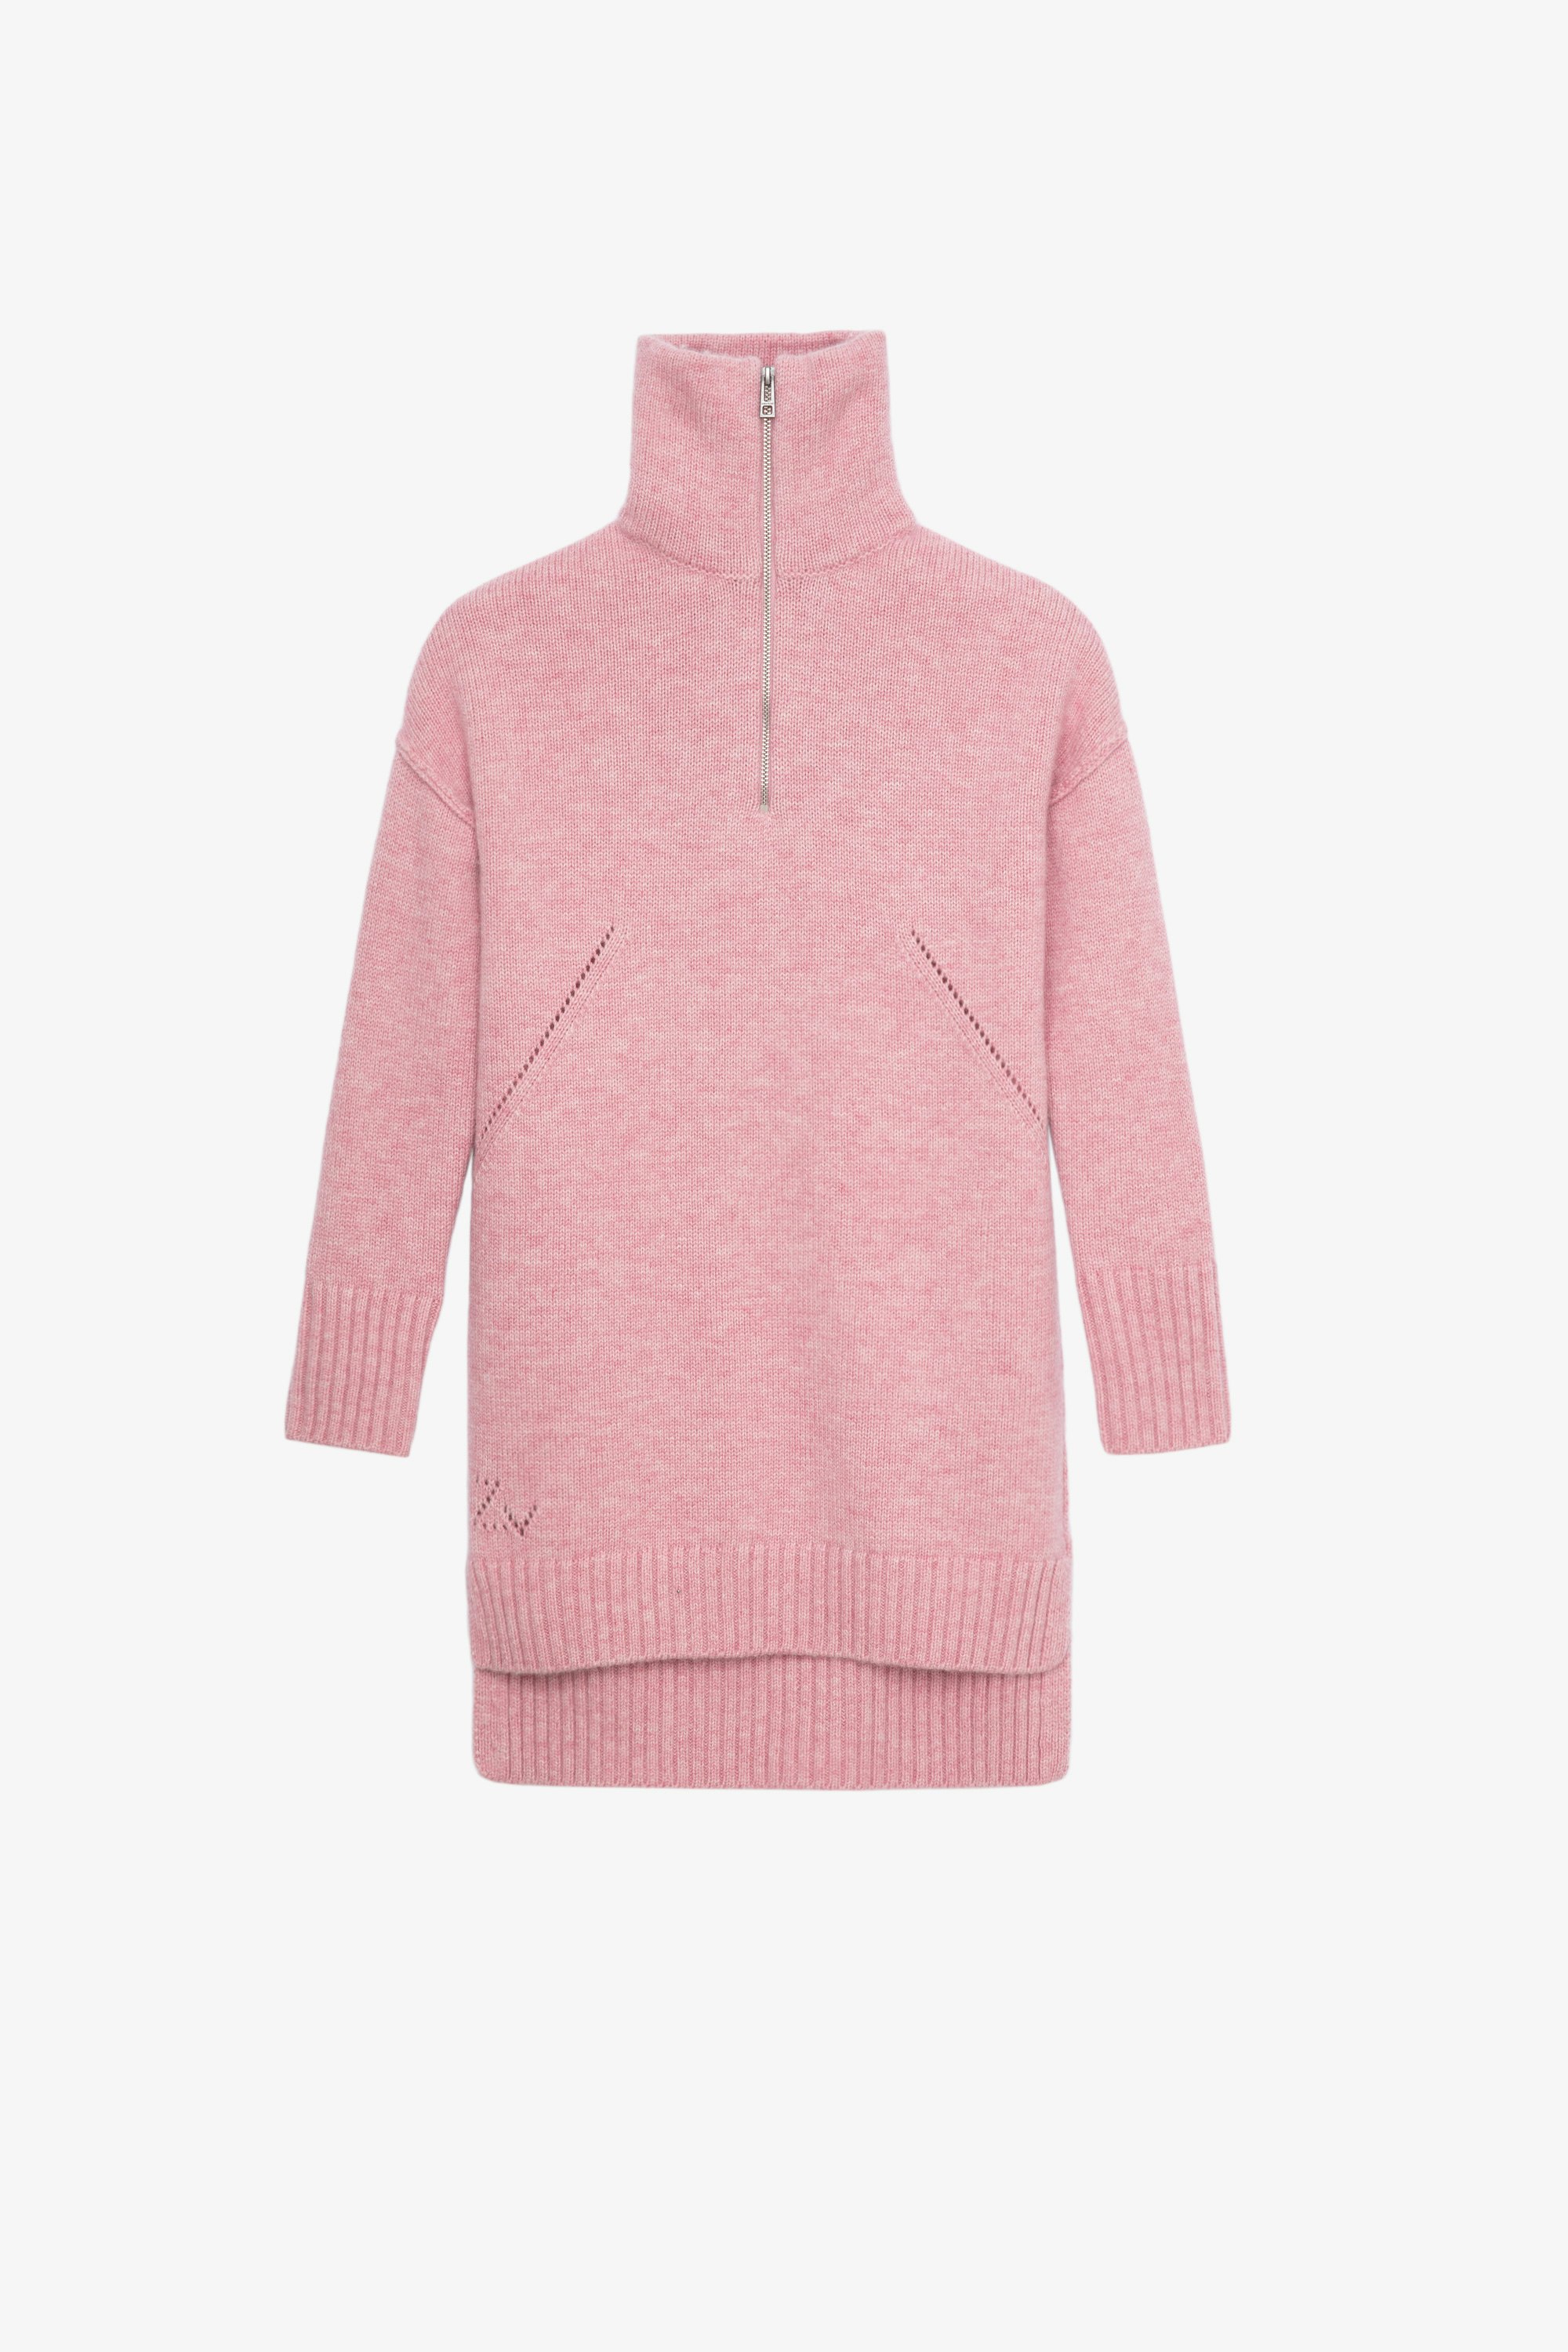 Milene Children’s ワンピース Children’s pink long-sleeve knitted sweater dress 